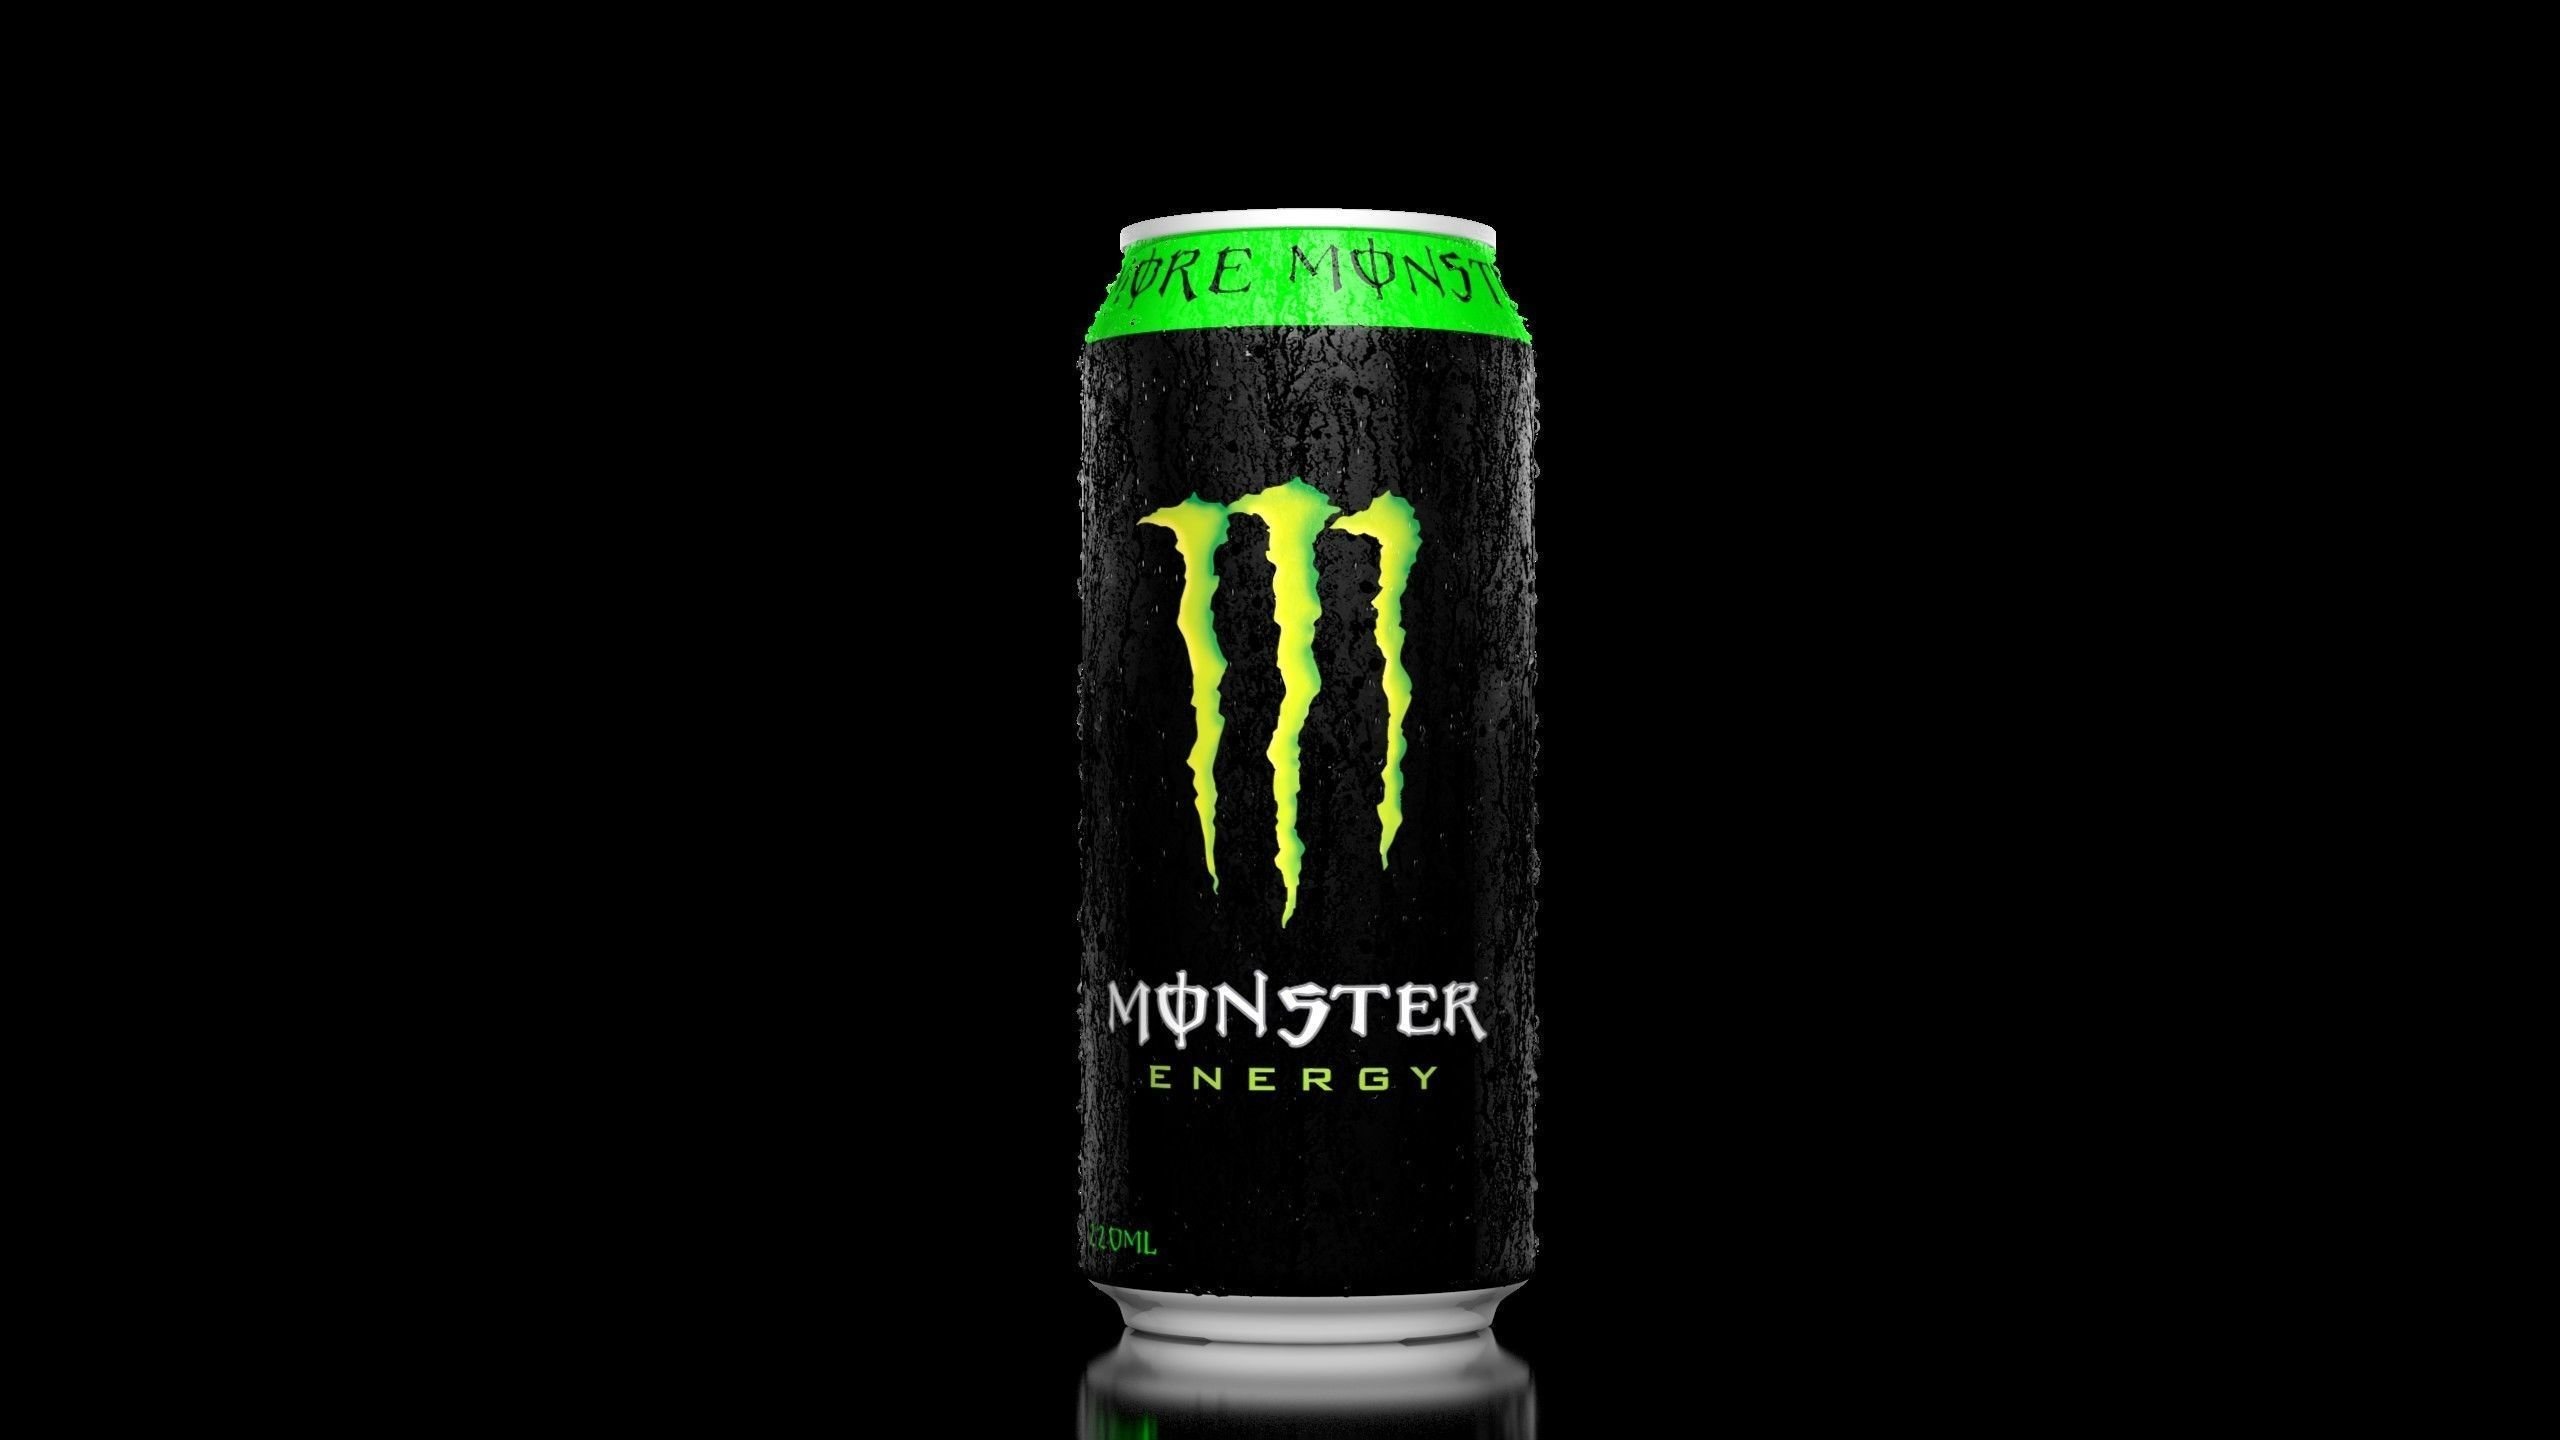 Monster Energy Mega 710ml